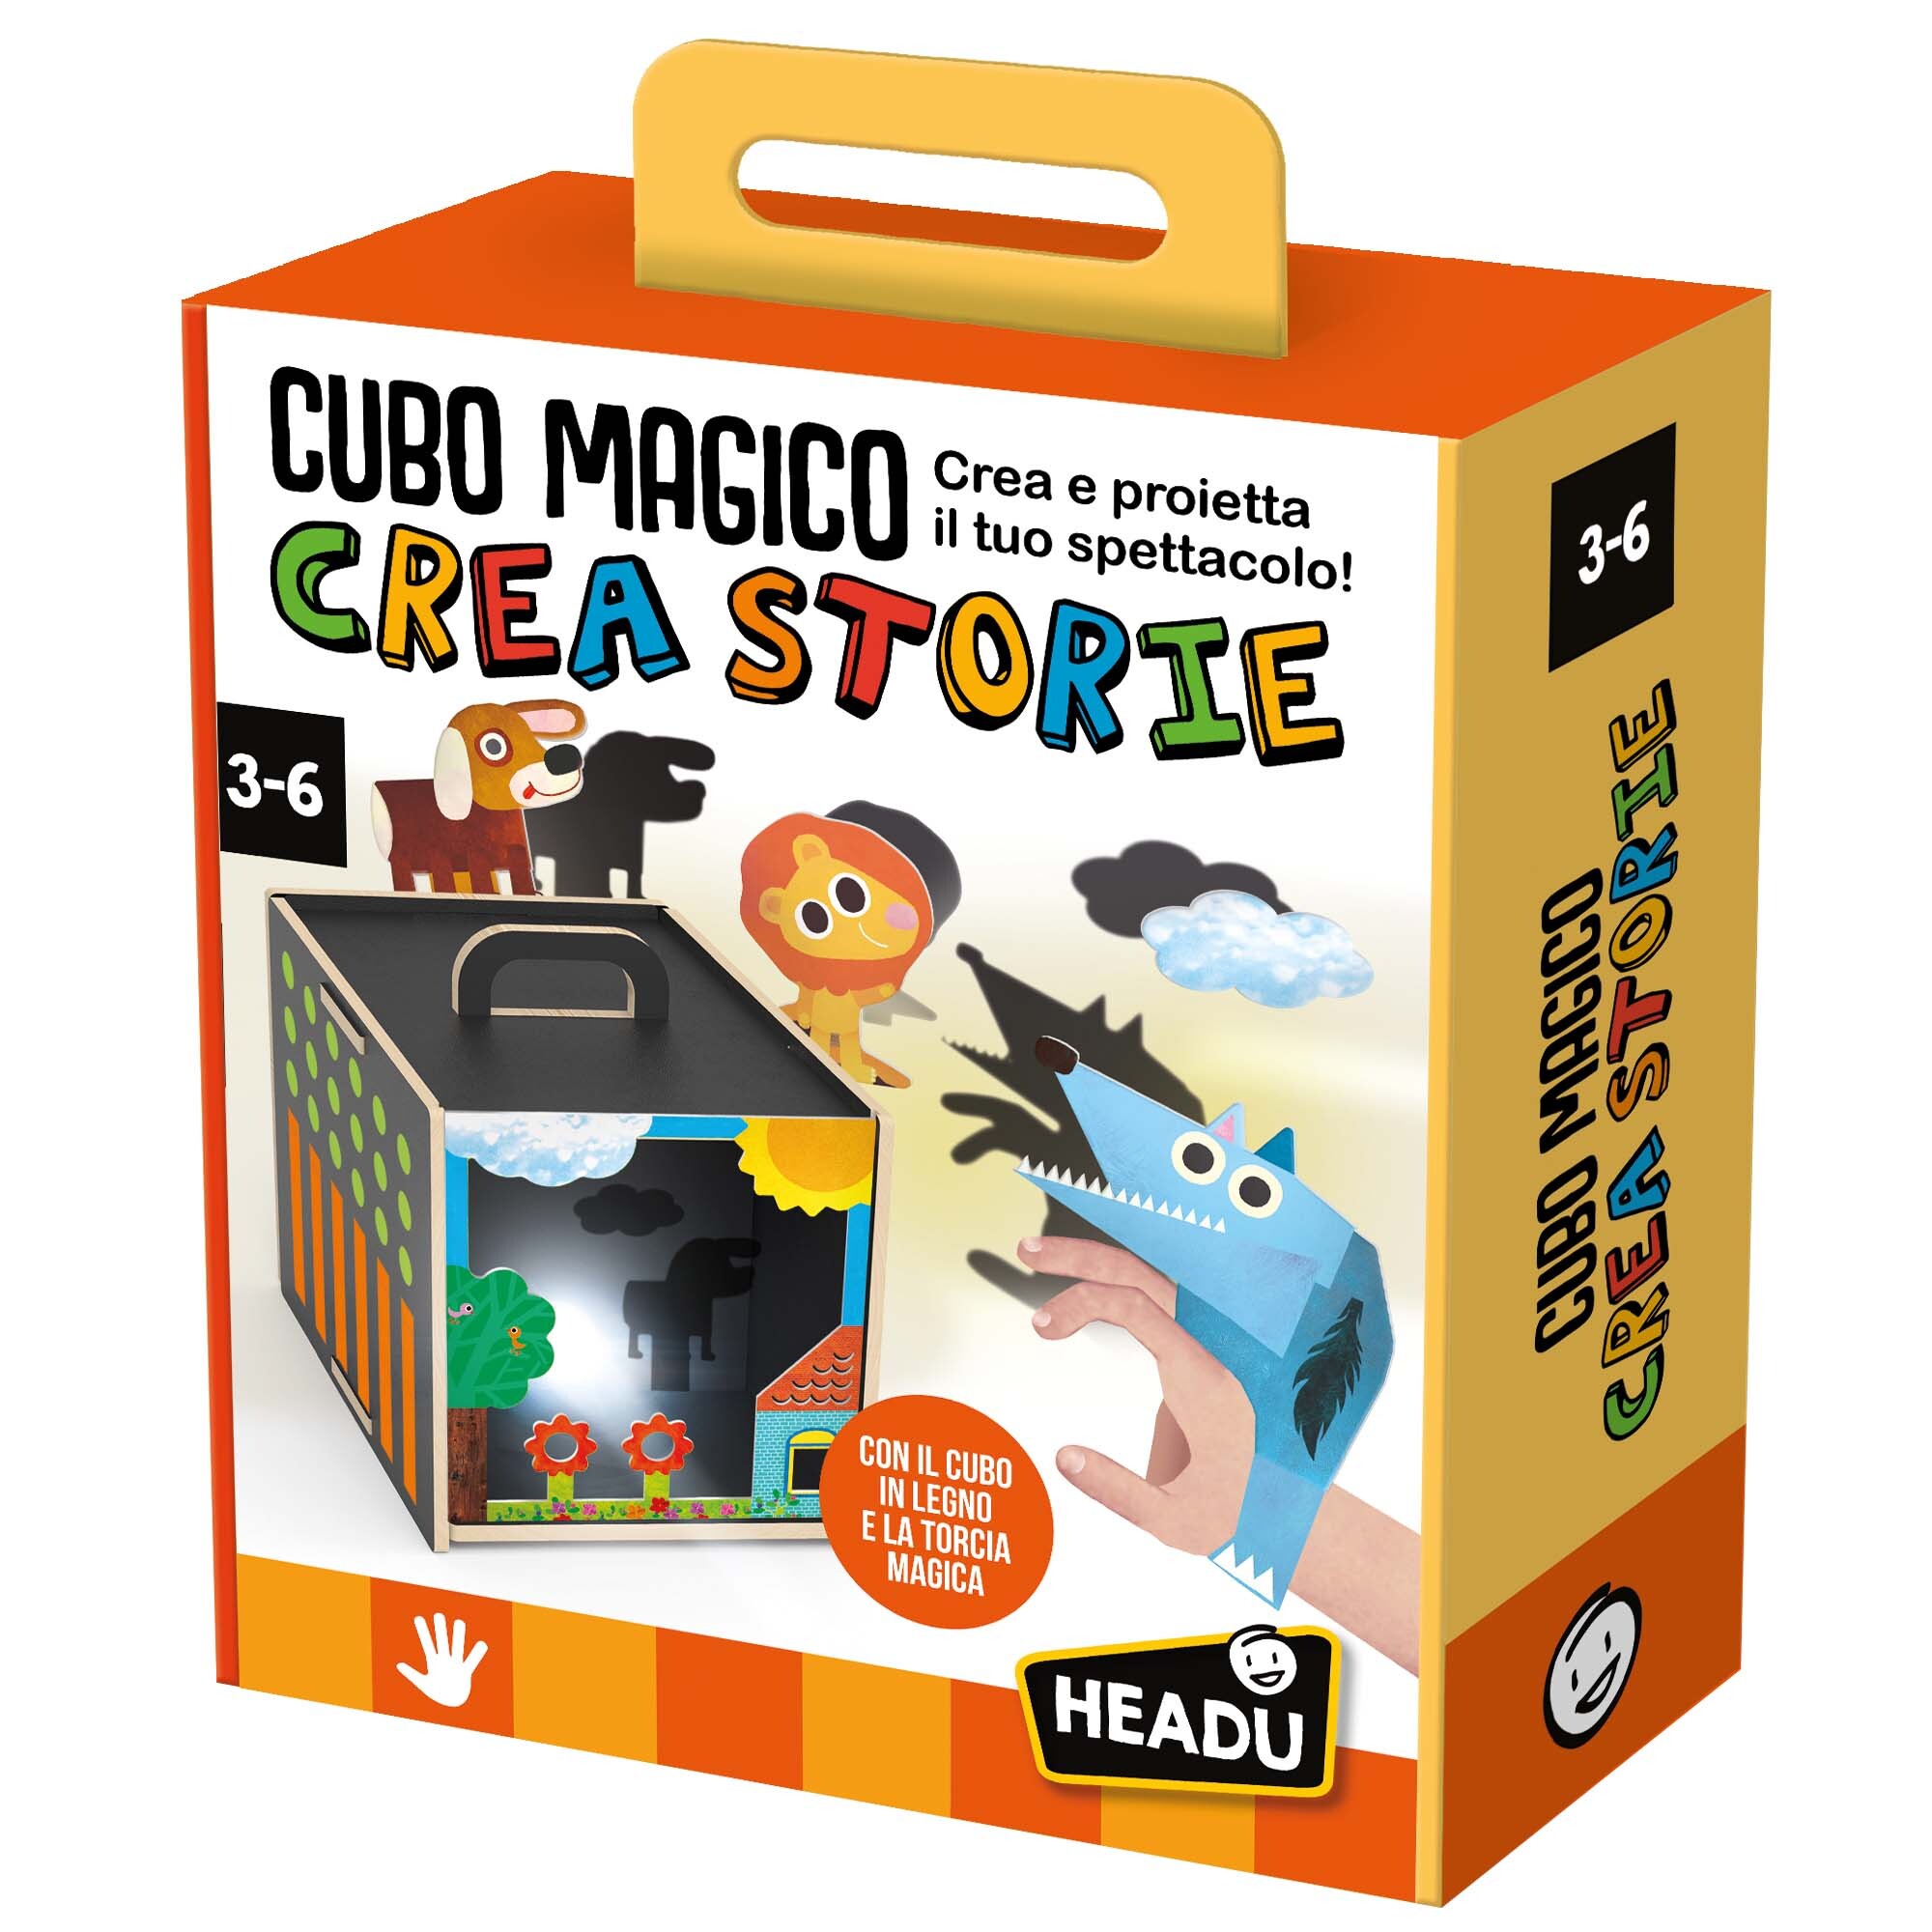 Cubo magico crea storie.	crea e proietta il tuo spettacolo!	made in italy.  teacher tested - HEADU